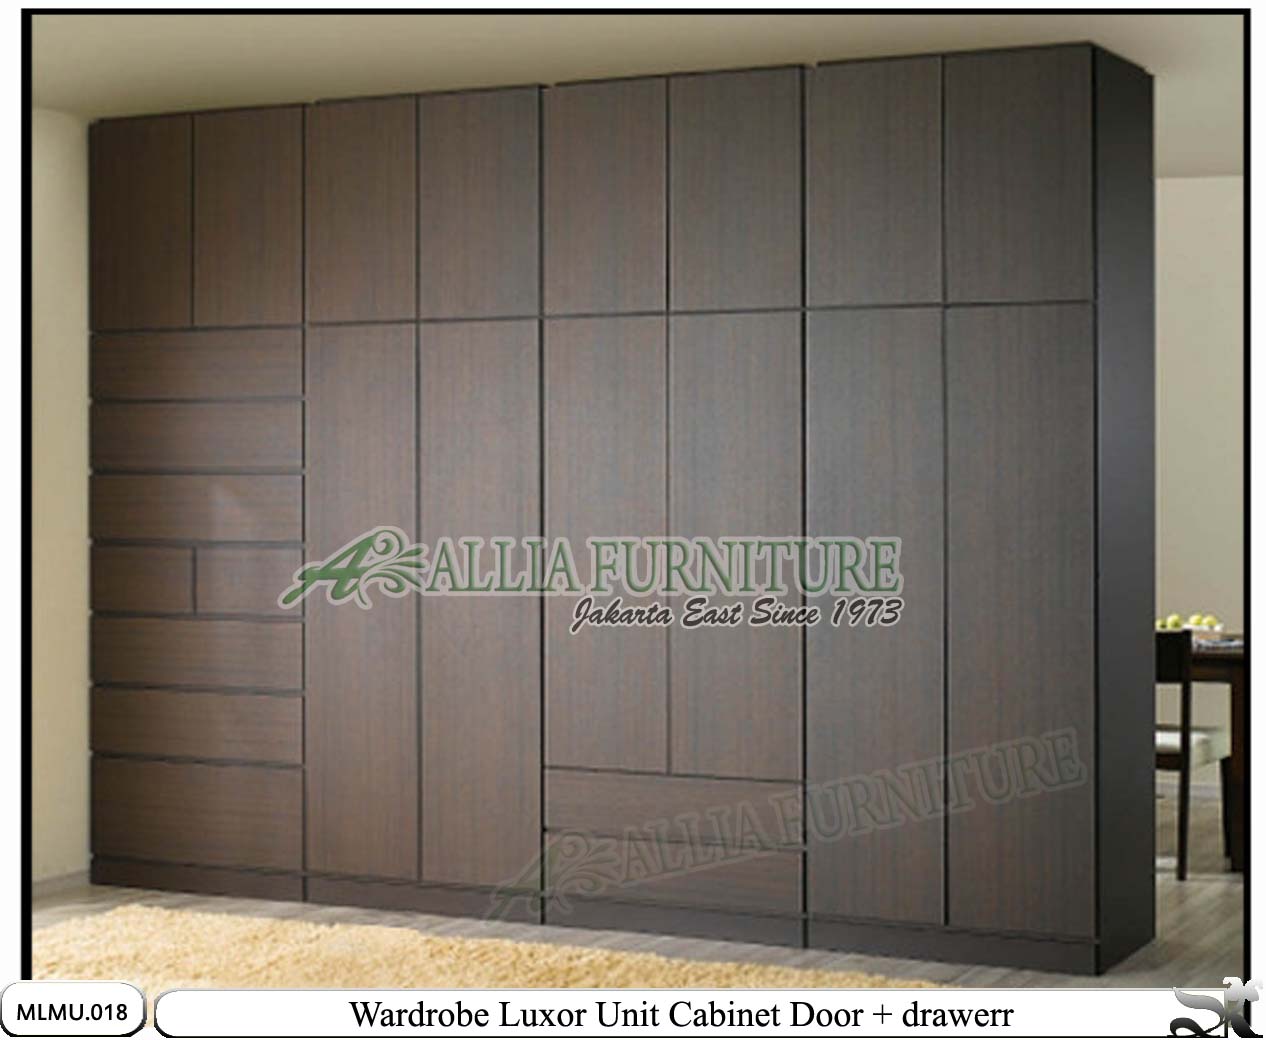  Lemari minimalis full unit cabinet Luxor Allia Furniture